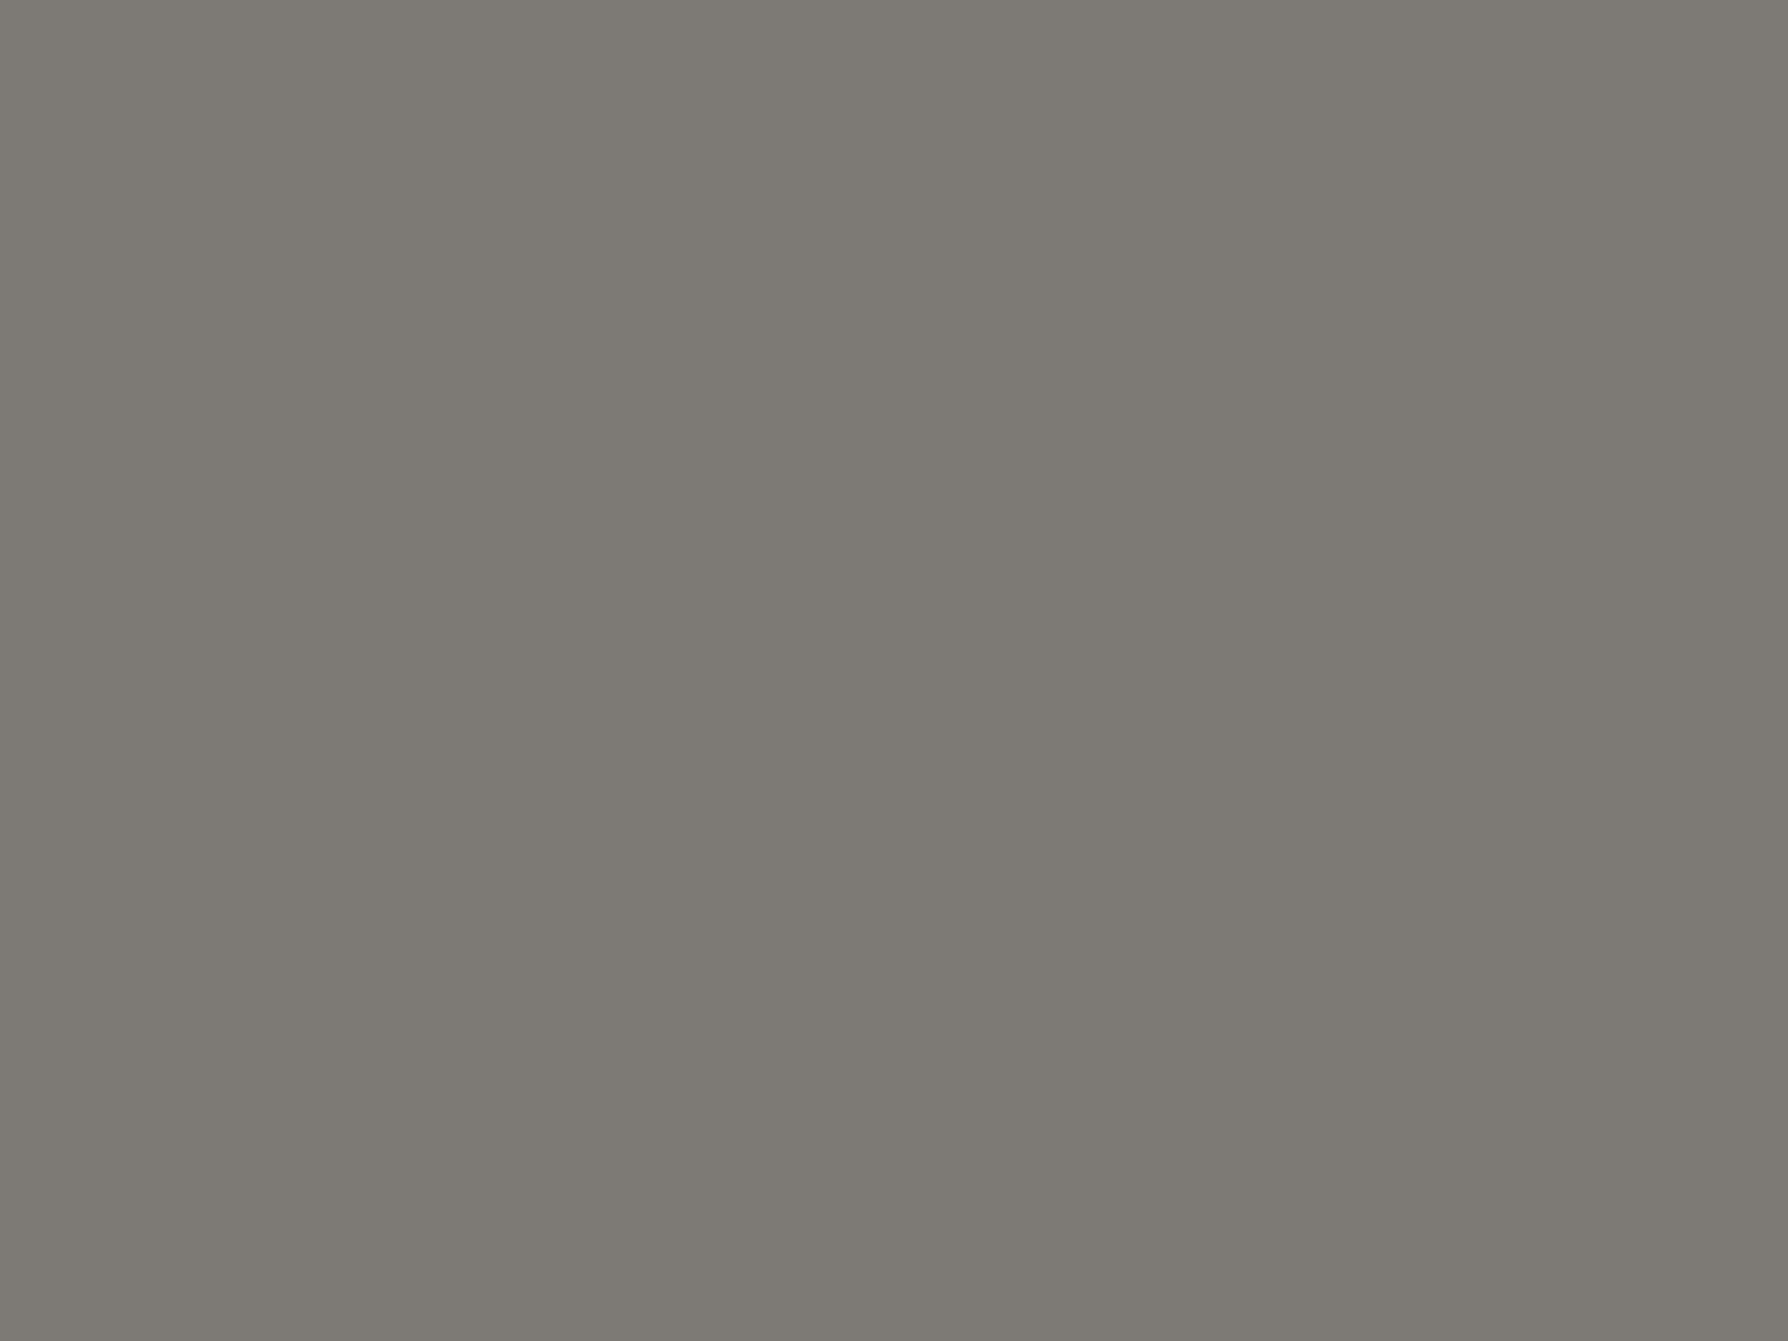 Электропаяльник. Привезен в подарок для Александра Родченко. США, 1925. Государственный музей В.В. Маяковского, Москва